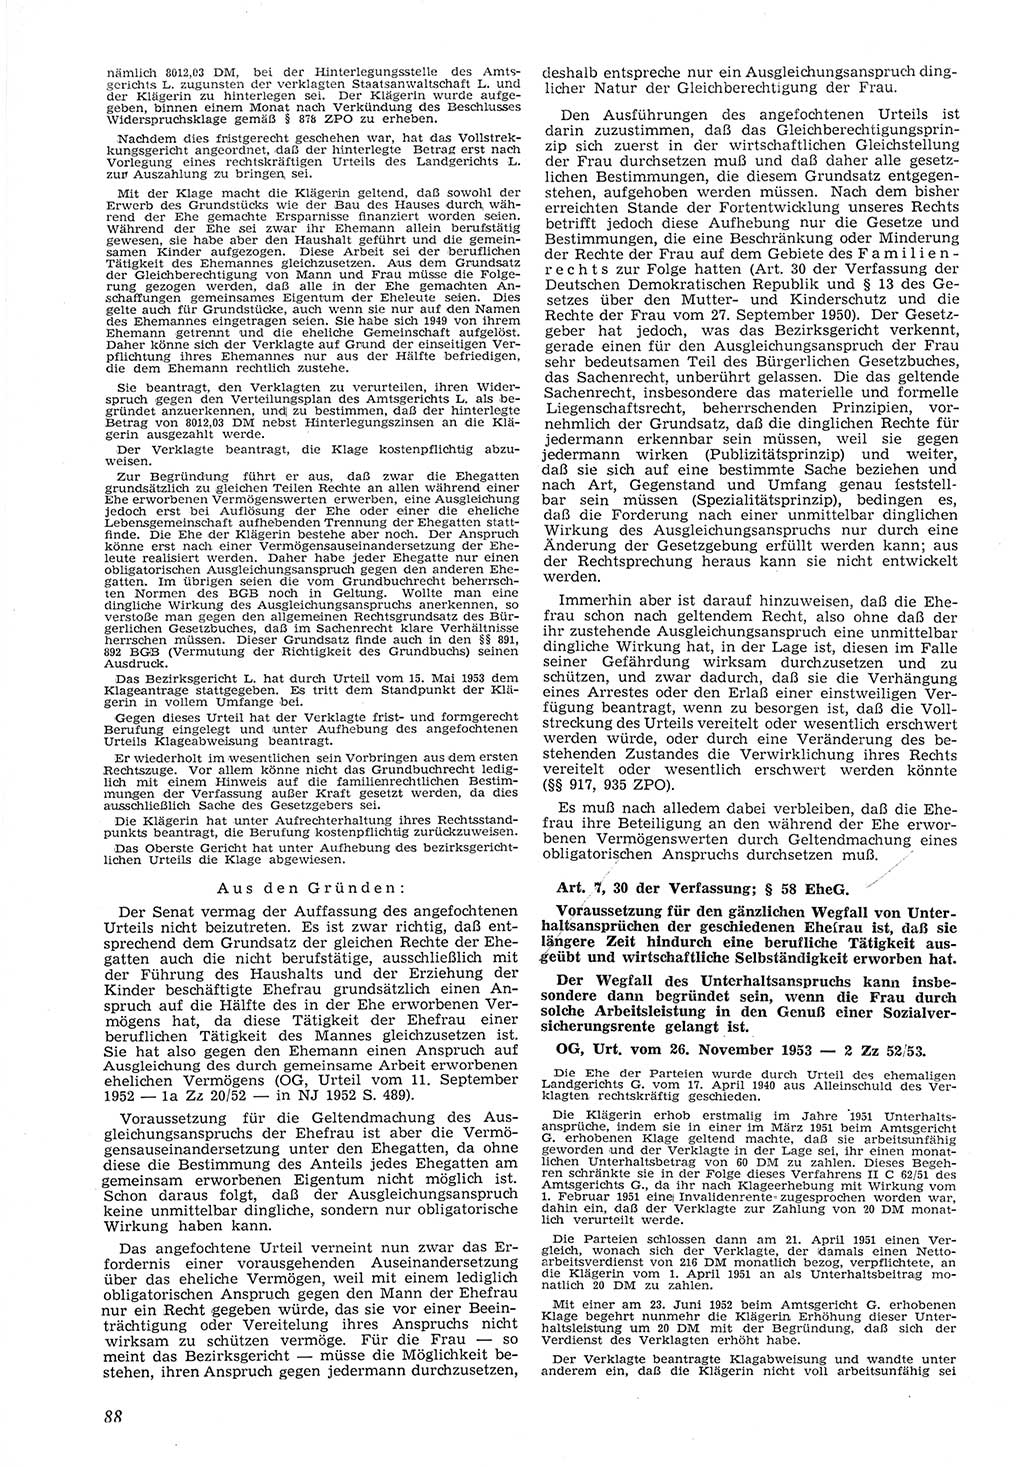 Neue Justiz (NJ), Zeitschrift für Recht und Rechtswissenschaft [Deutsche Demokratische Republik (DDR)], 8. Jahrgang 1954, Seite 88 (NJ DDR 1954, S. 88)